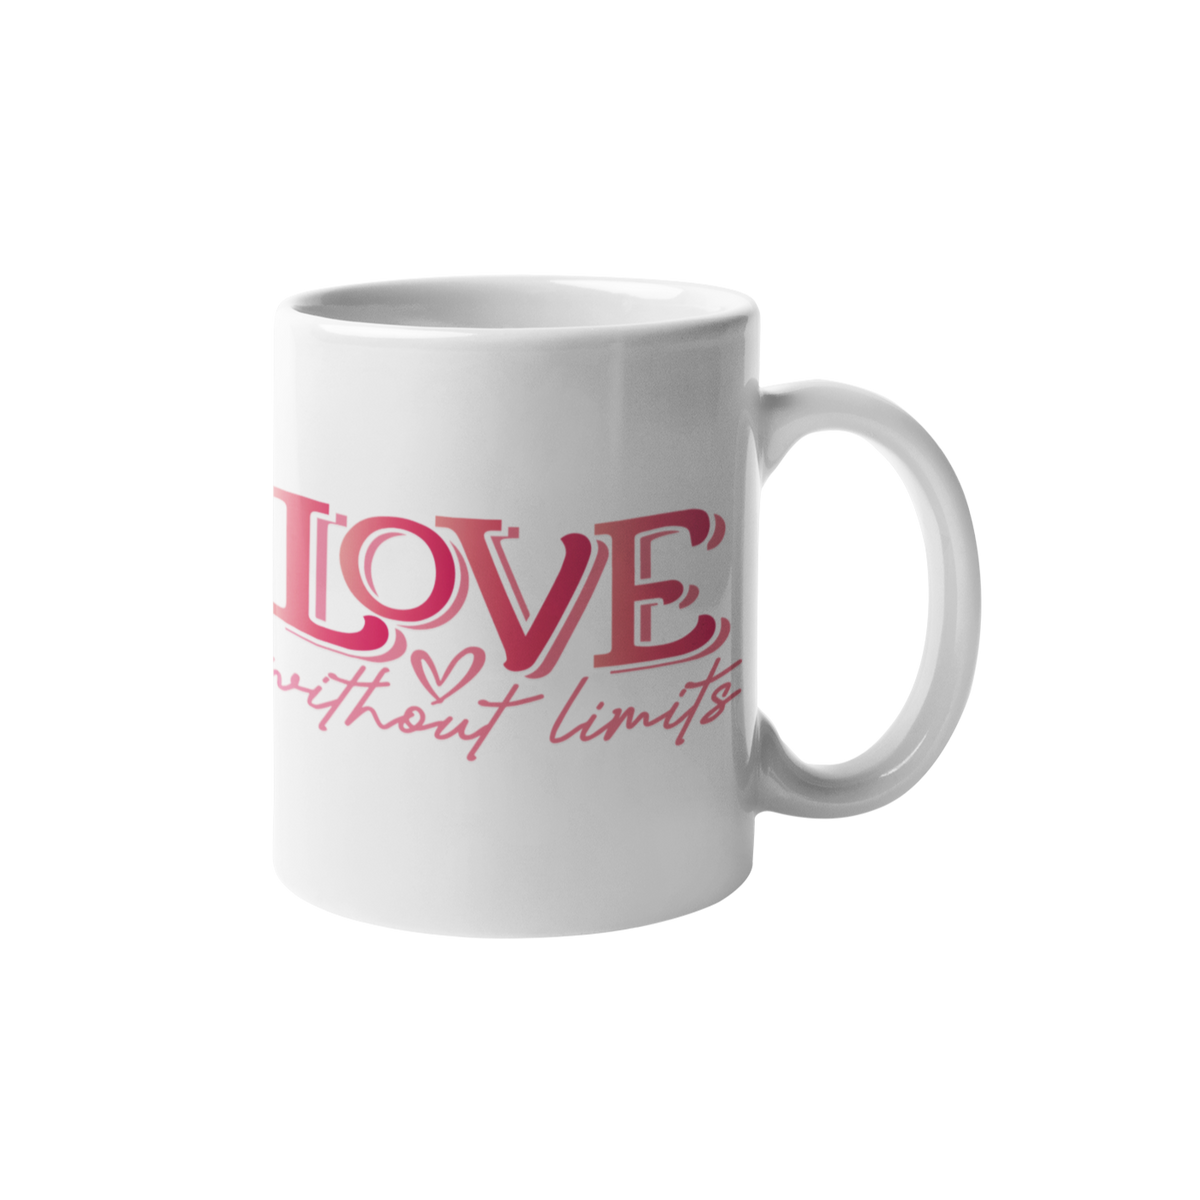 Love without limits - Mug